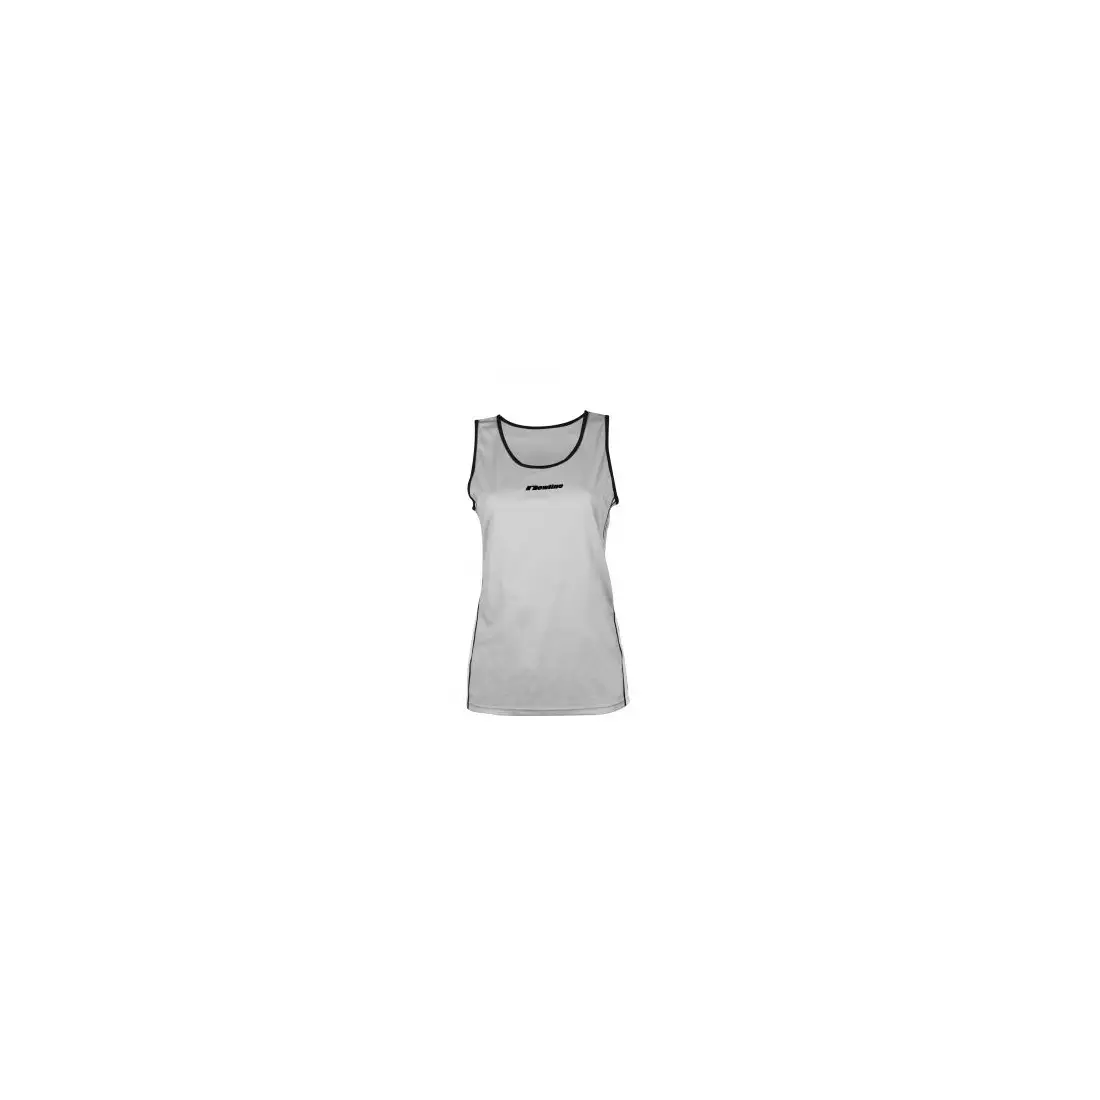 NEWLINE SINGLET - Damen-Laufshirt, ärmellos 16671-02